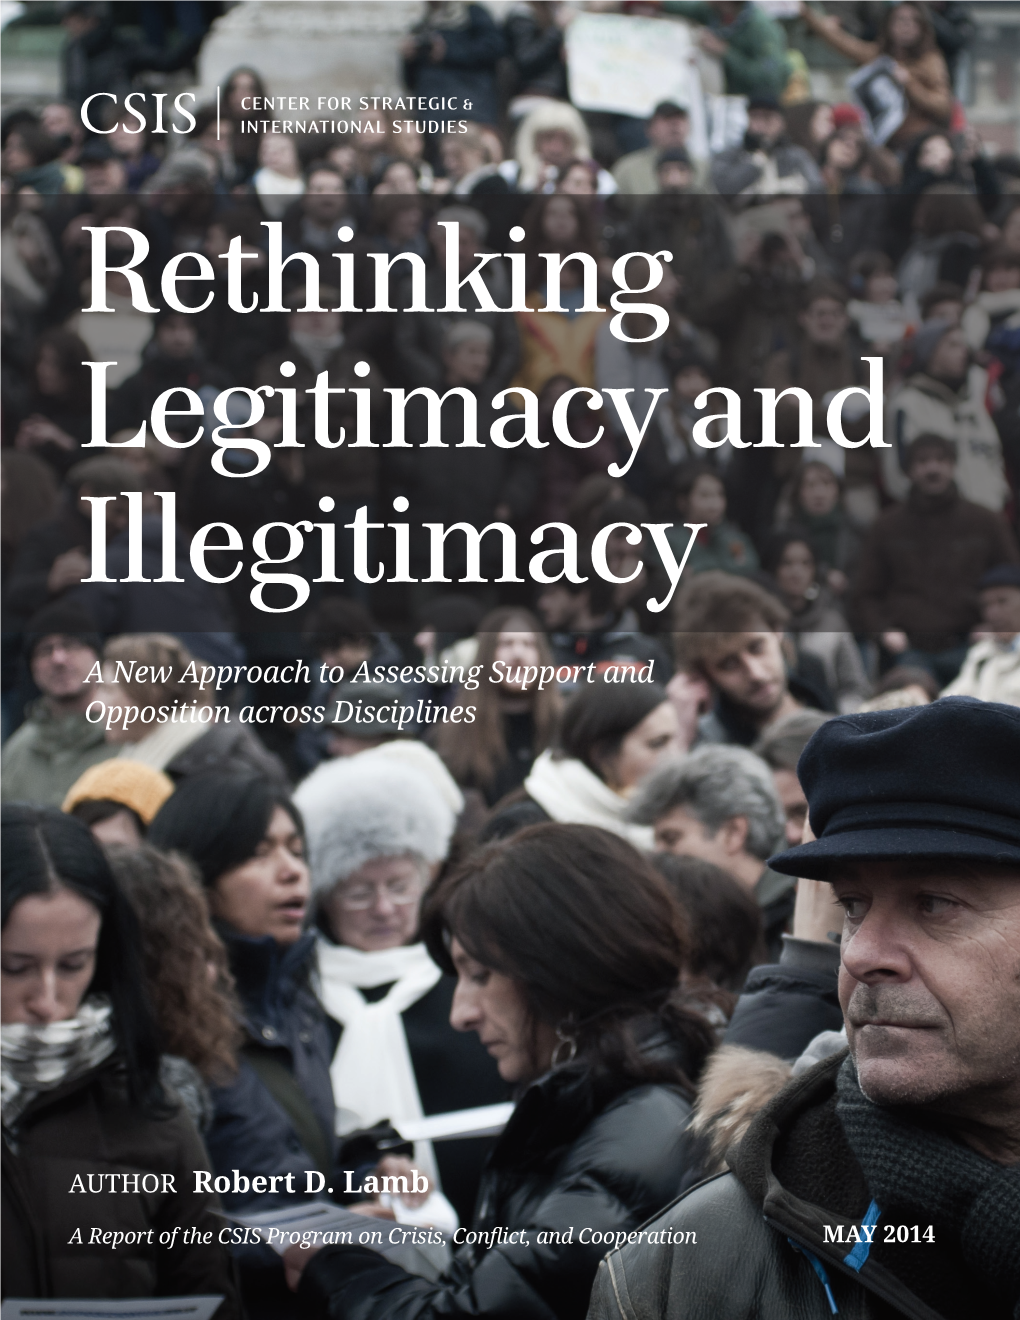 Rethinking Legitimacy and Illegitimacy 1616 Rhode Island Avenue NW | Washington, DC 20036 T